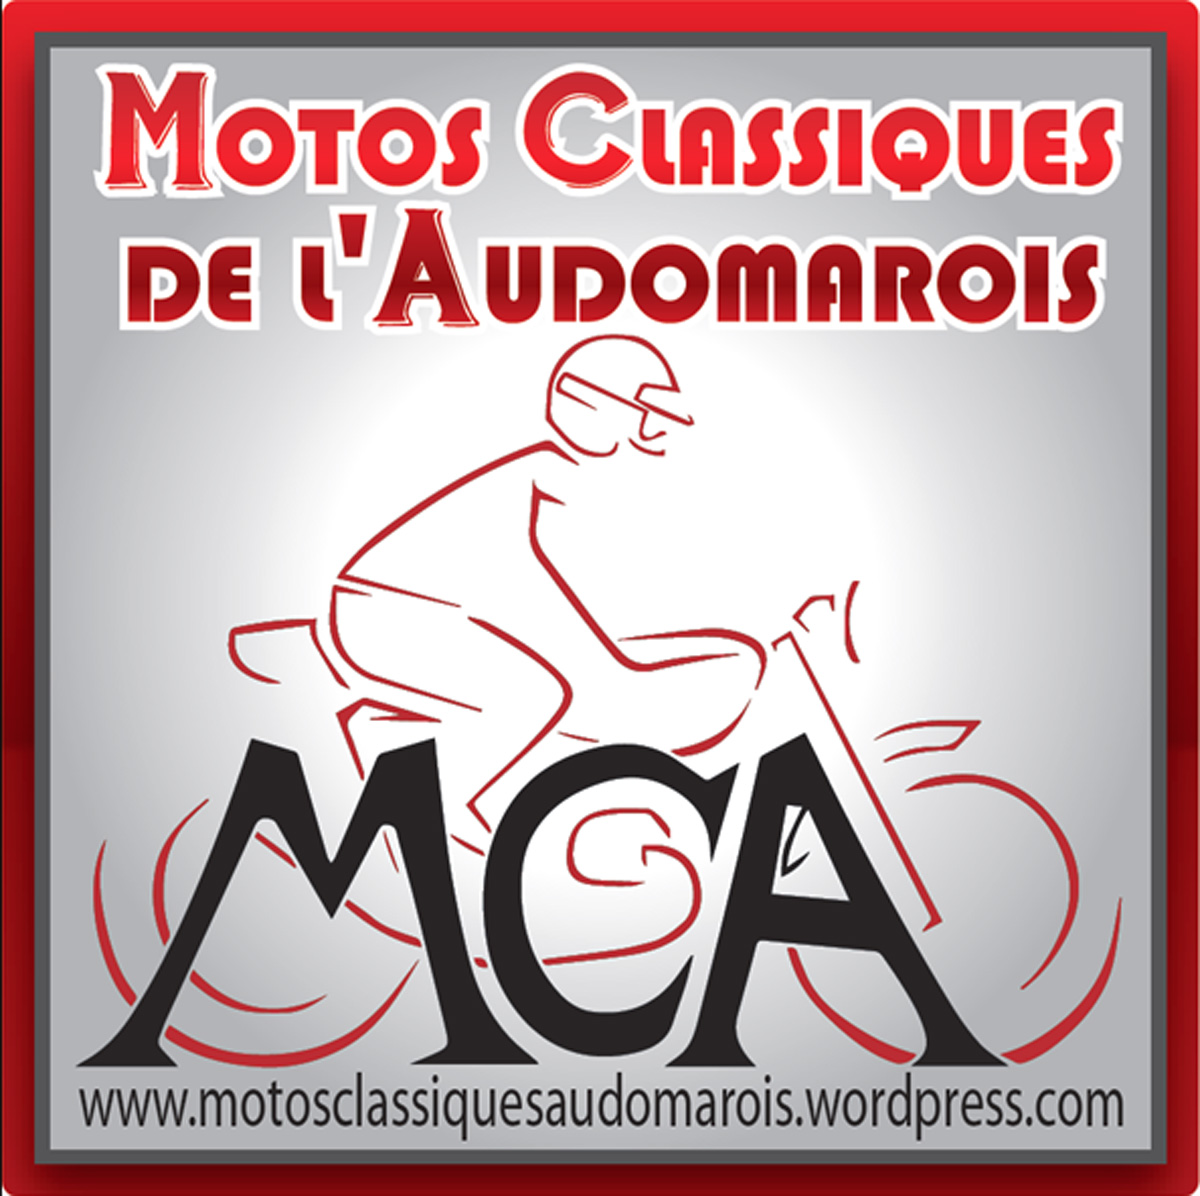 MOTO CLUB AUDOMAROIS, Circuit de Croix en Ternois